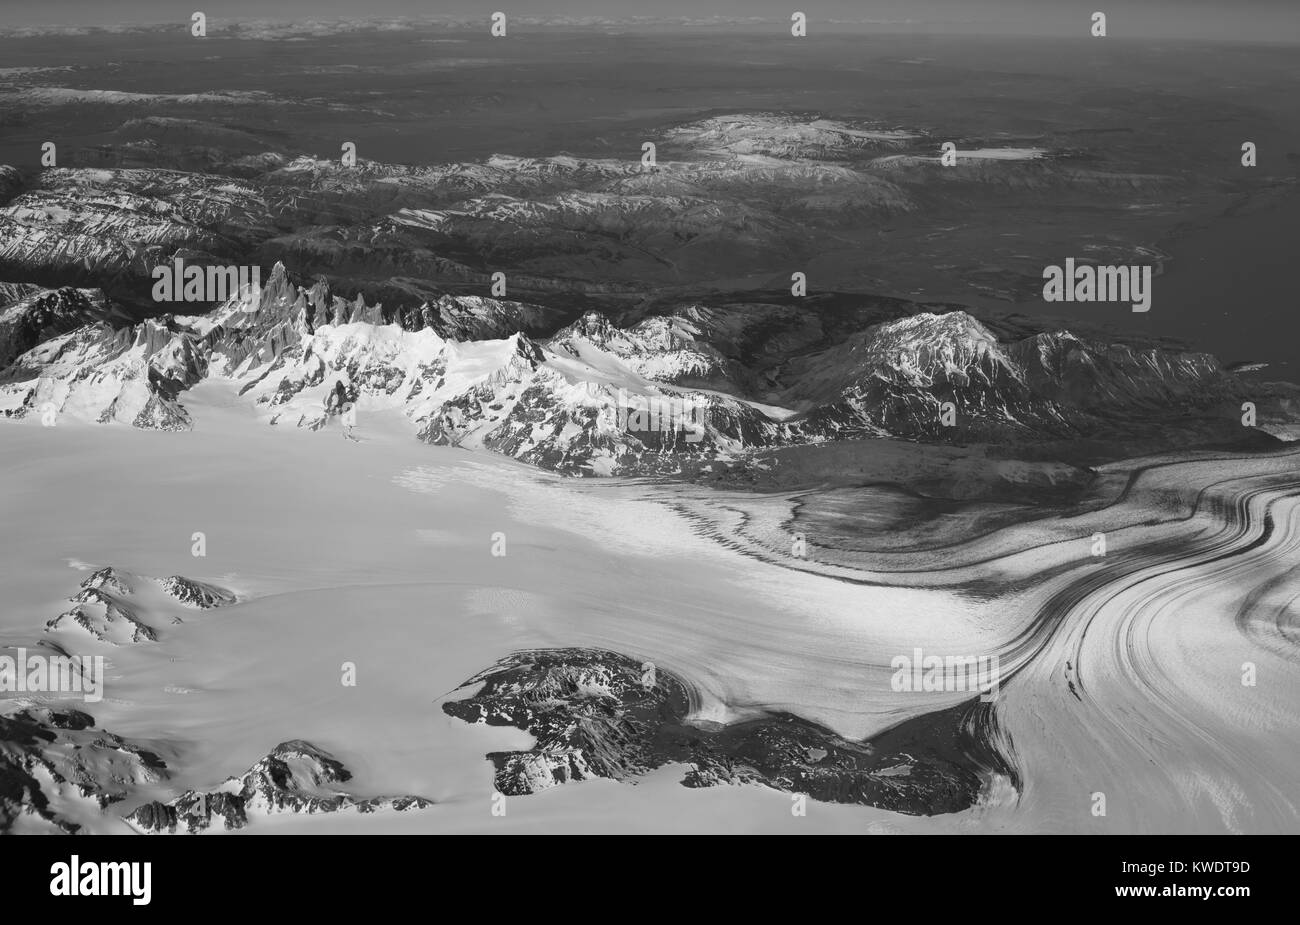 Vue aérienne de Mt. FitzRoy (El Chalten) et le champ de glace de Patagonie, prises d'un avion commercial au cours des Andes argentines. Banque D'Images